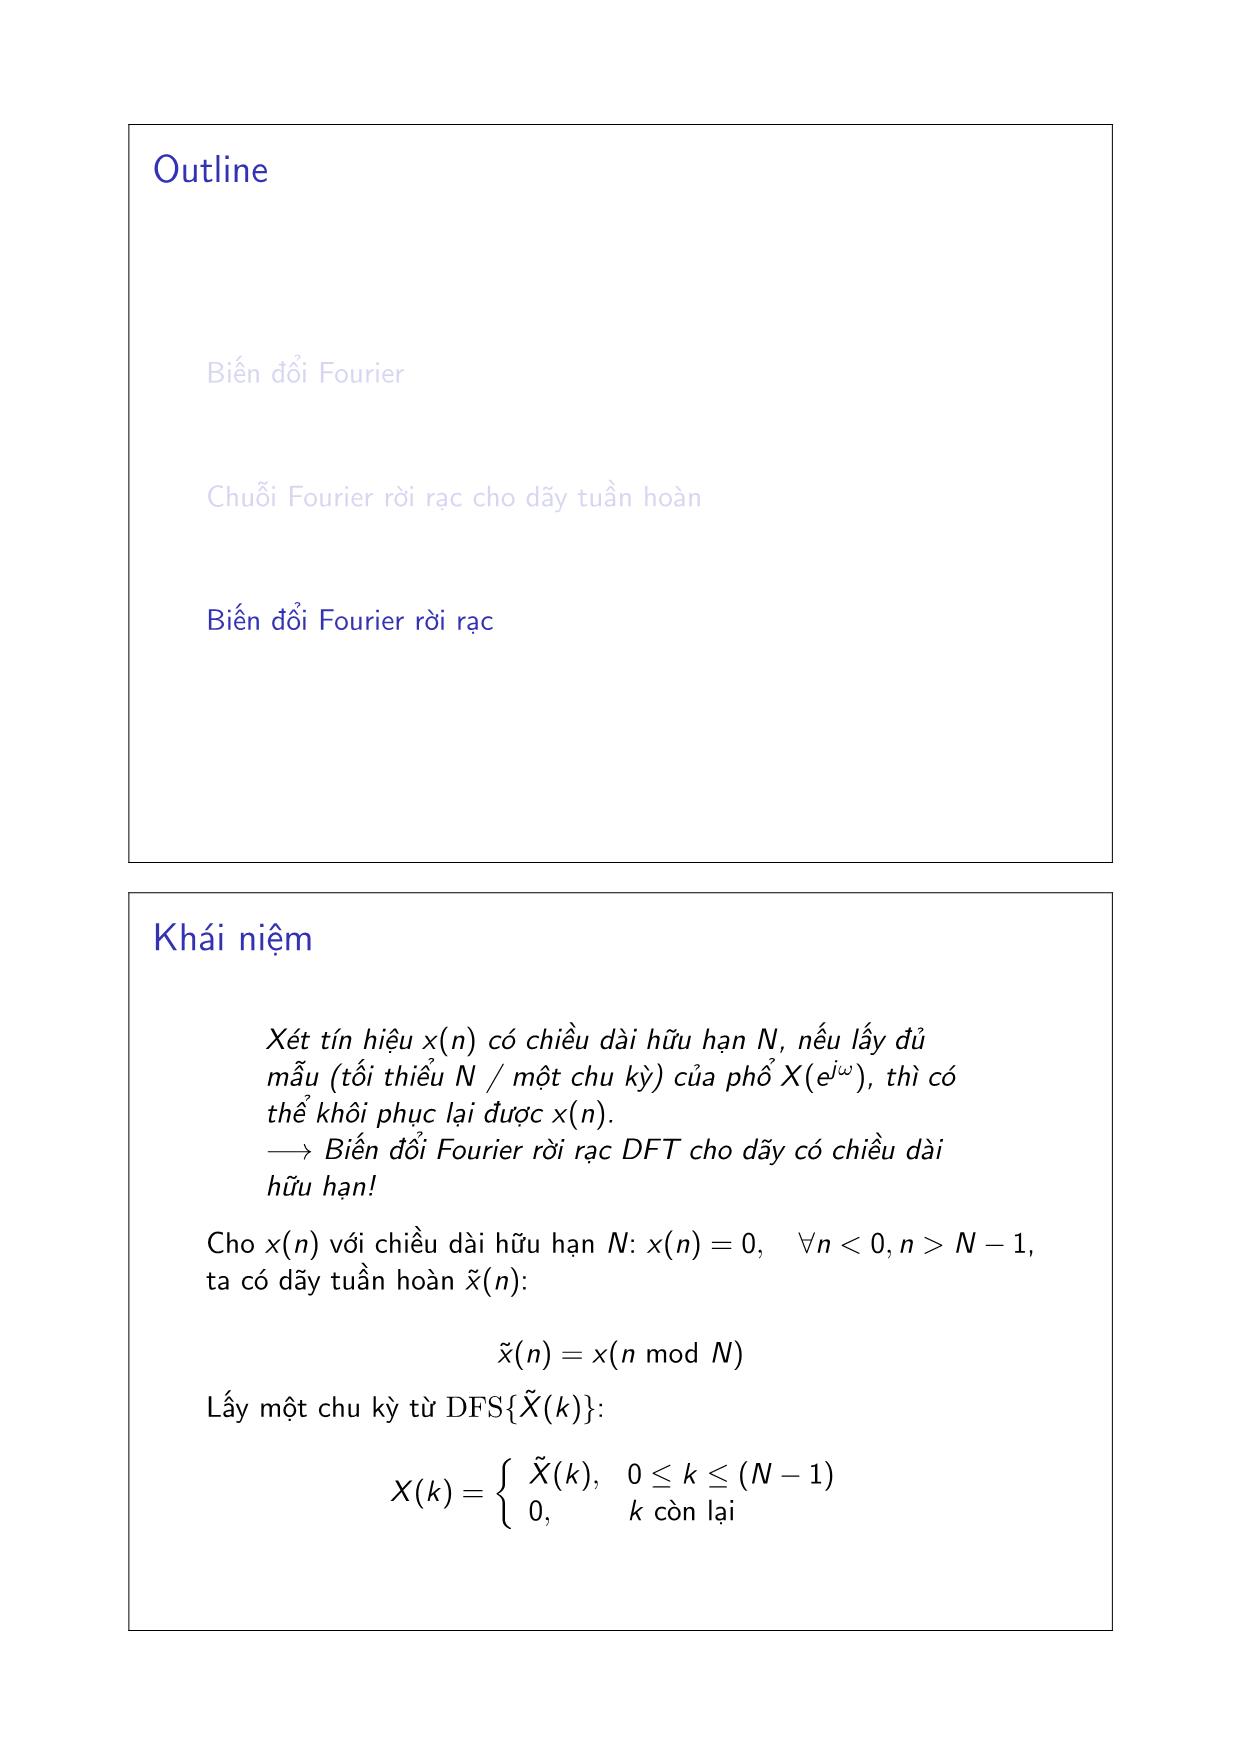 Bài giảng Xử lý tín hiệu số - Chương 2: Các phép biến đổi Fourier - Đặng Quang Hiếu trang 9